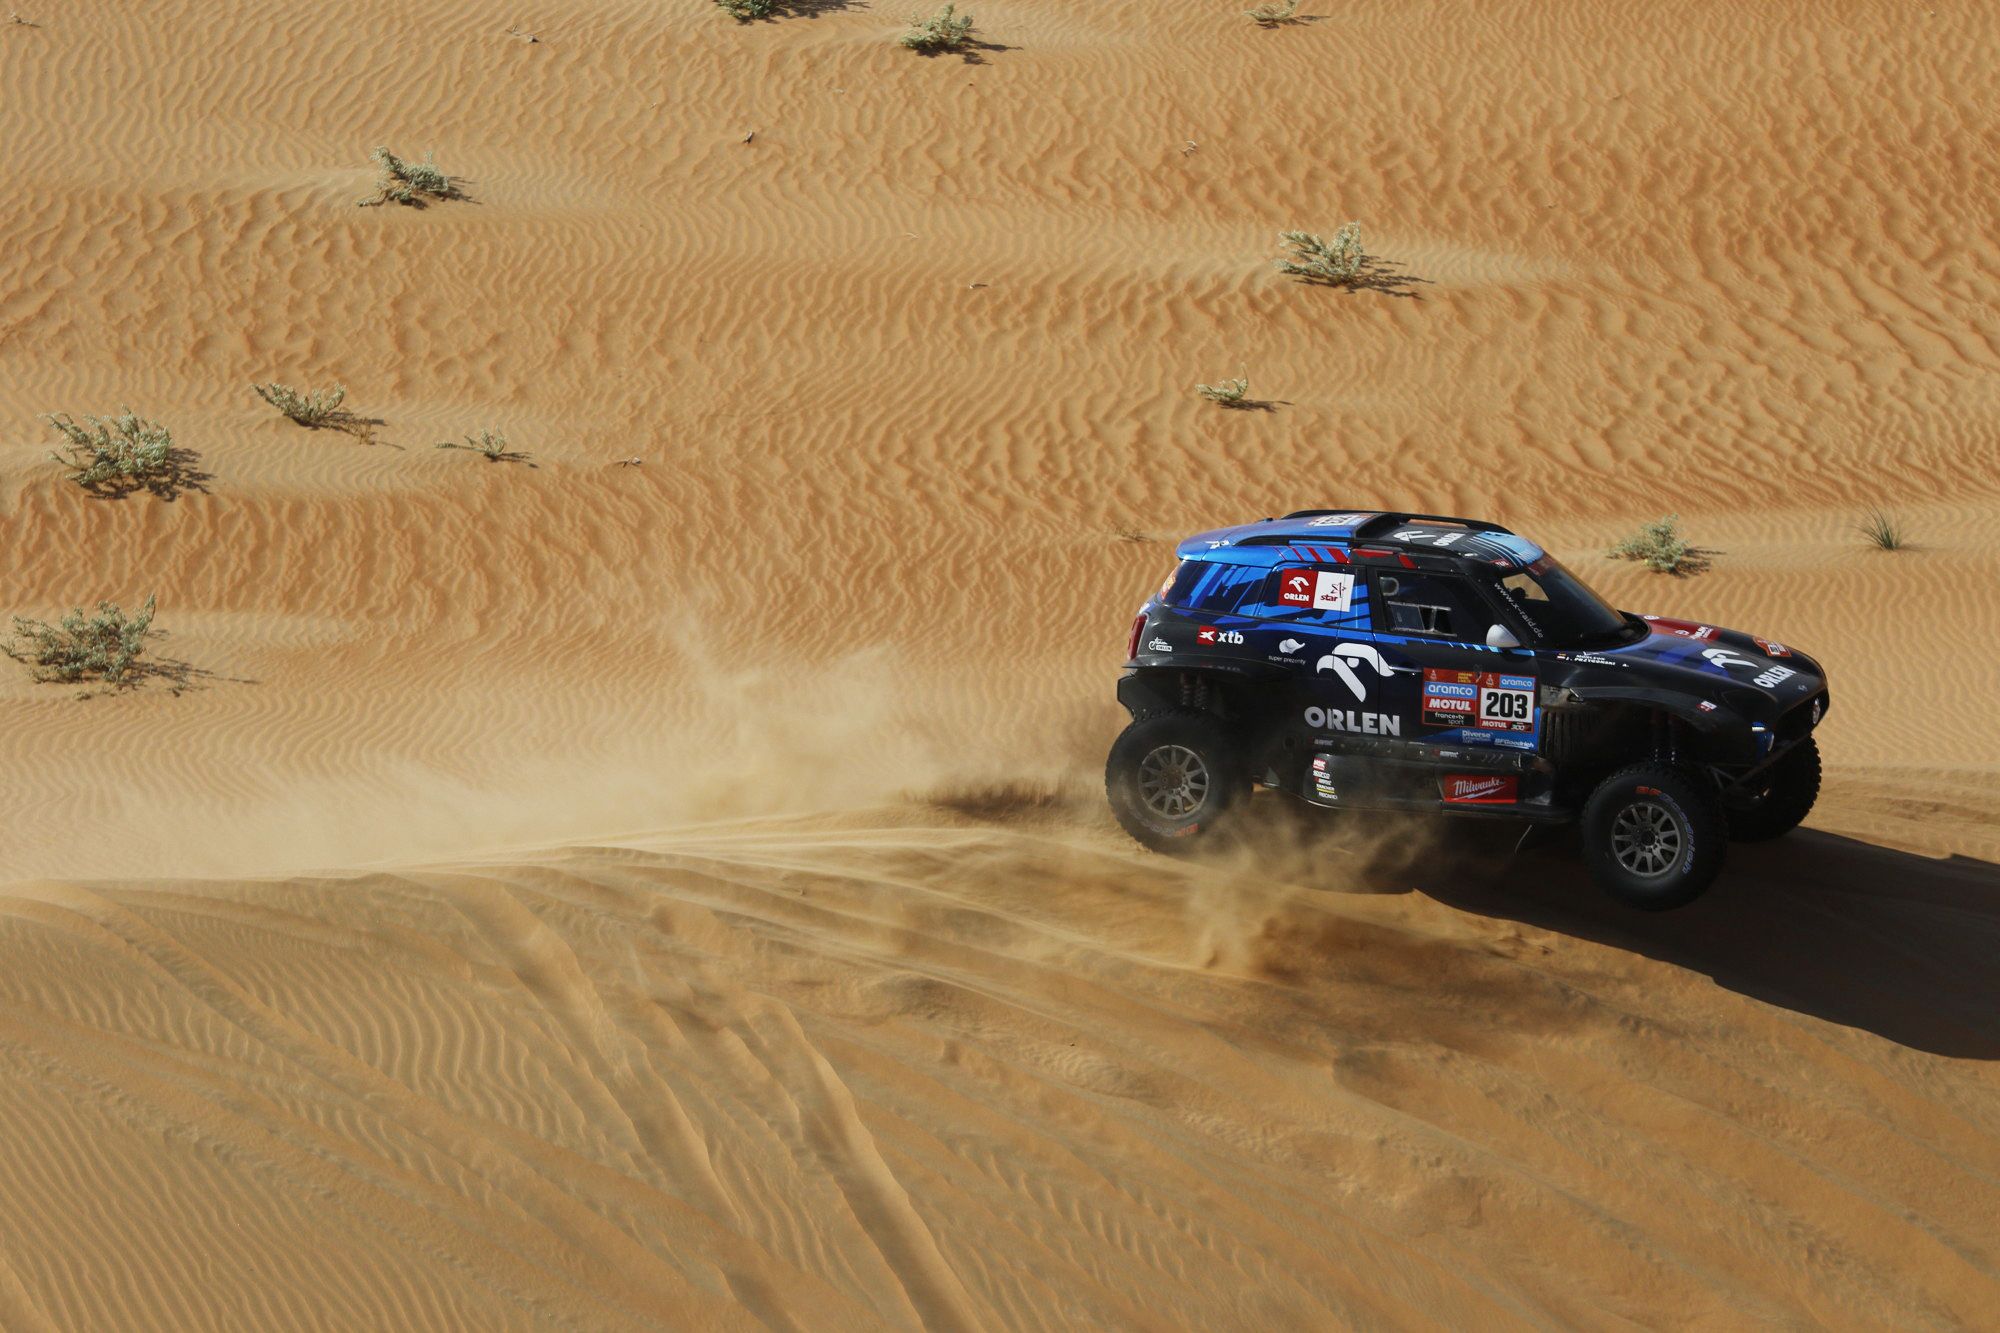 Dakar Rally (163441497).jpg